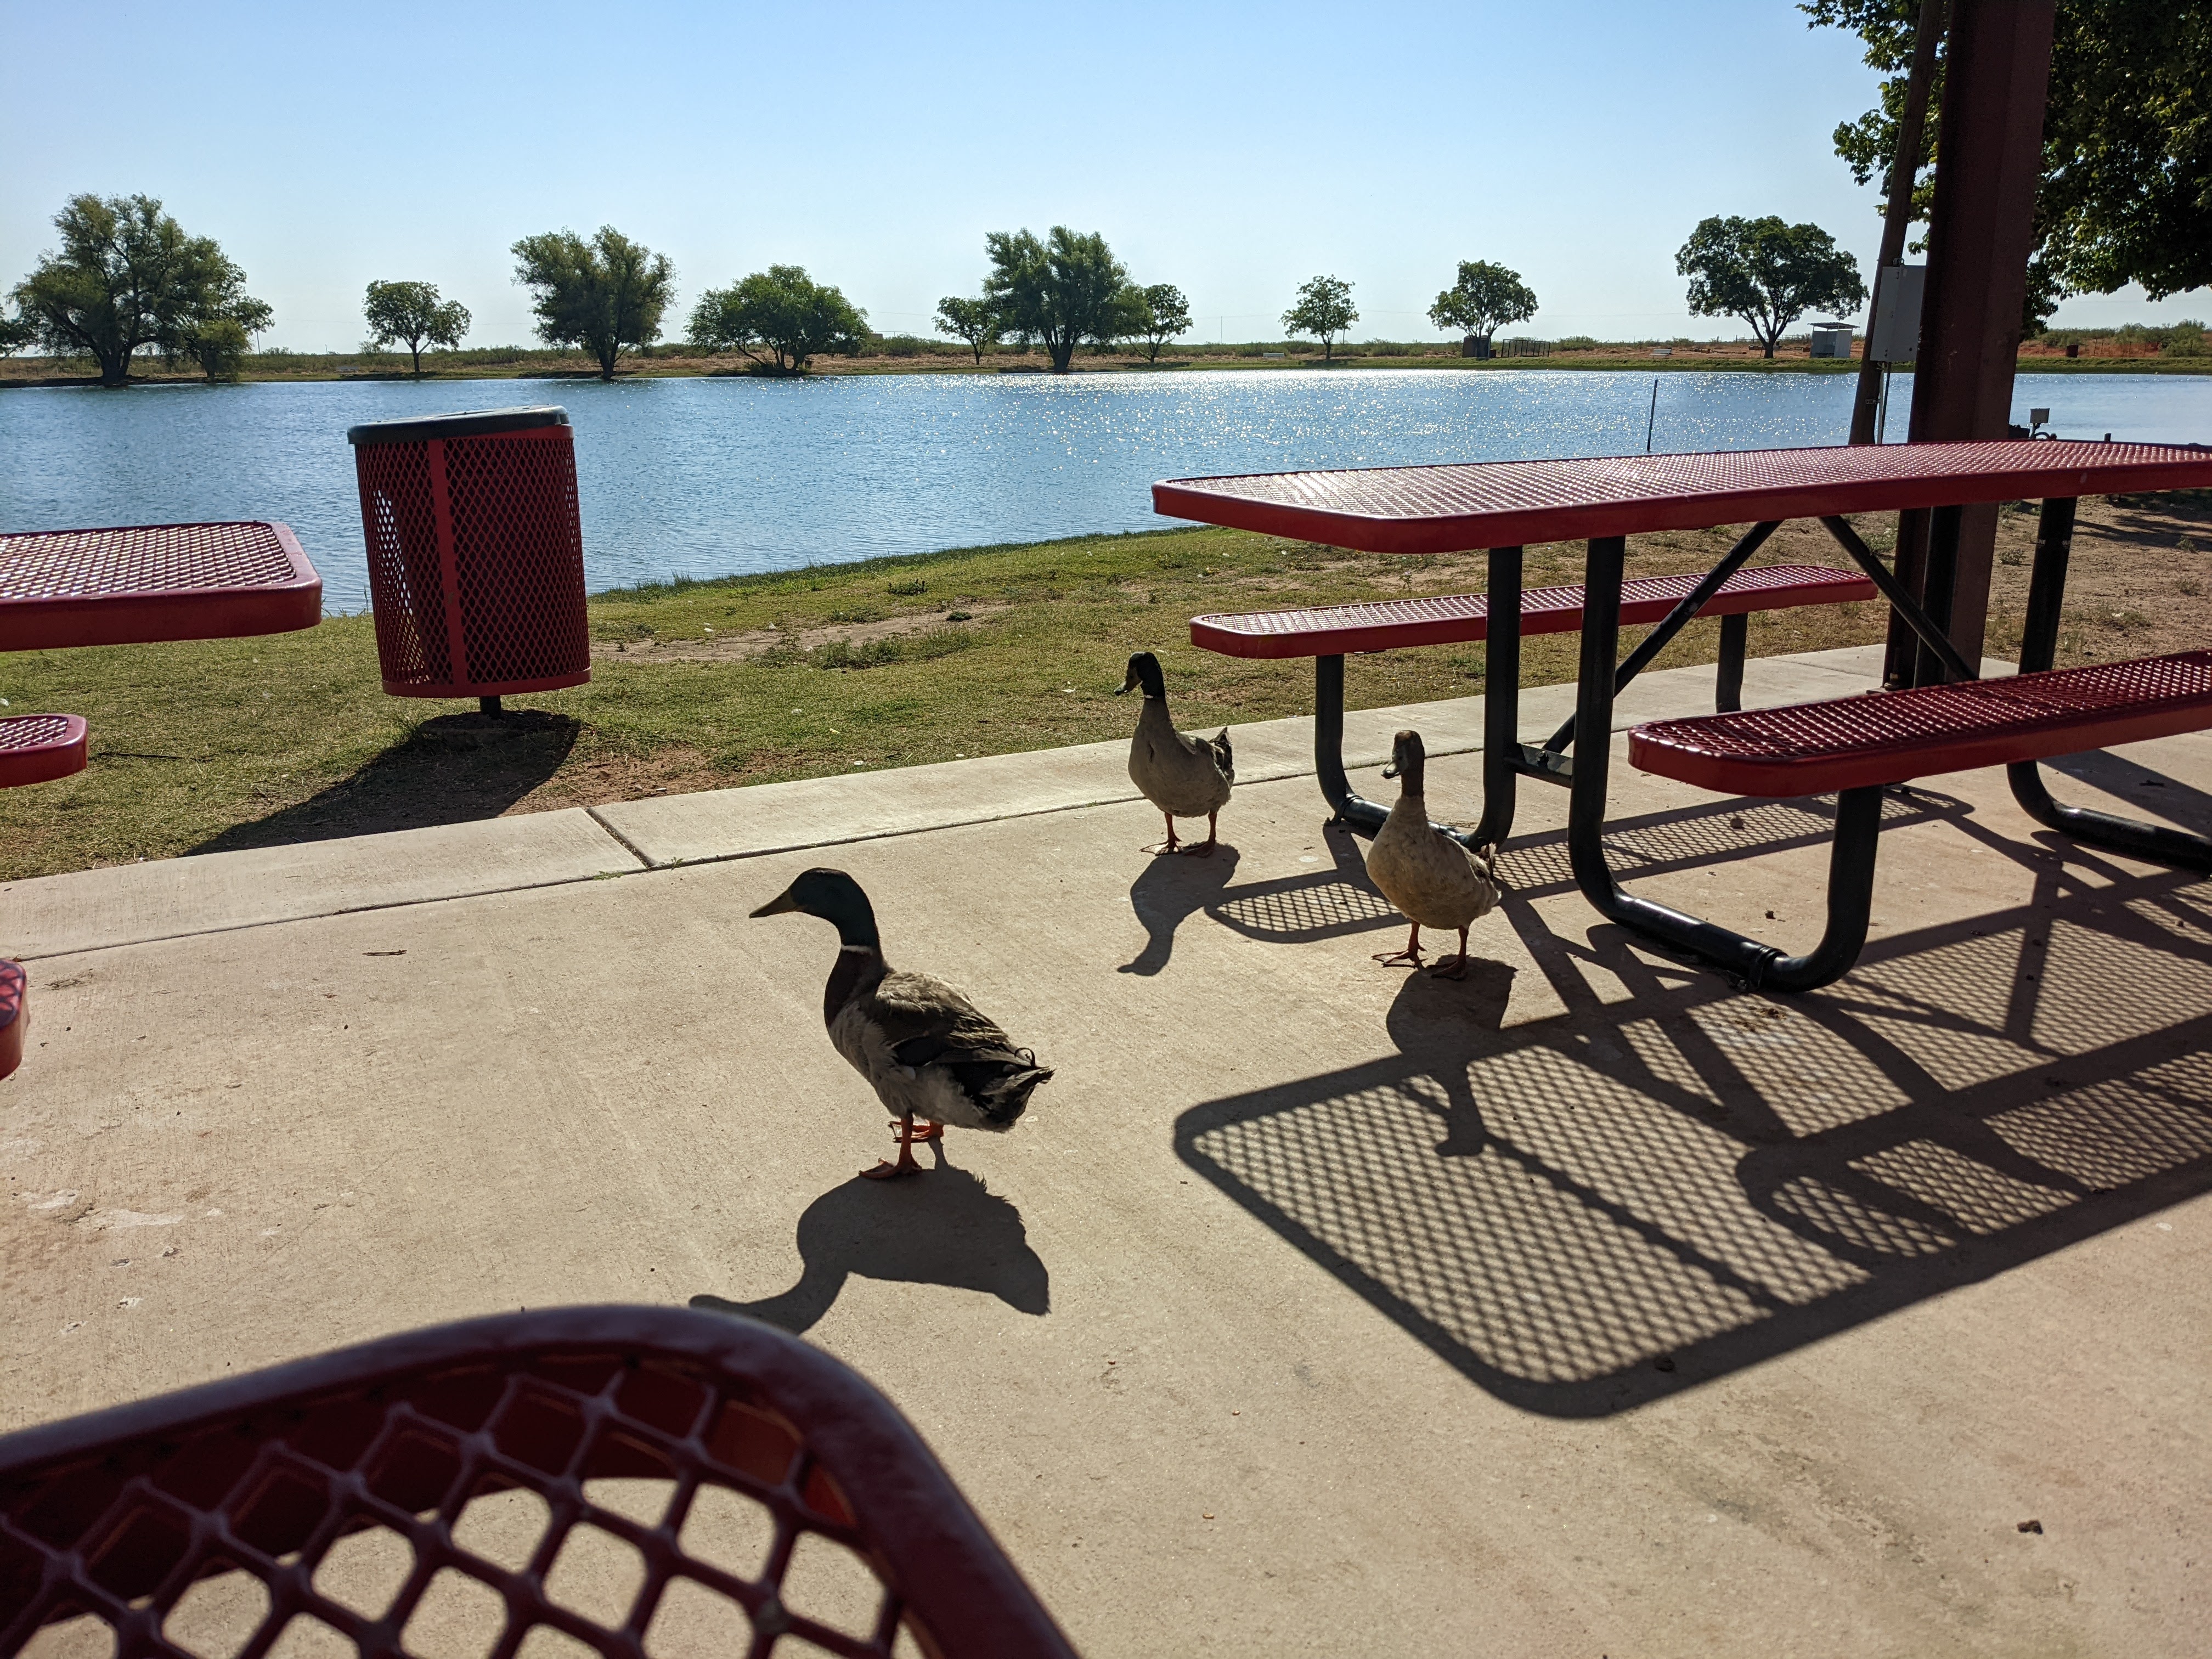 Ducks joining Kyle for breakfast